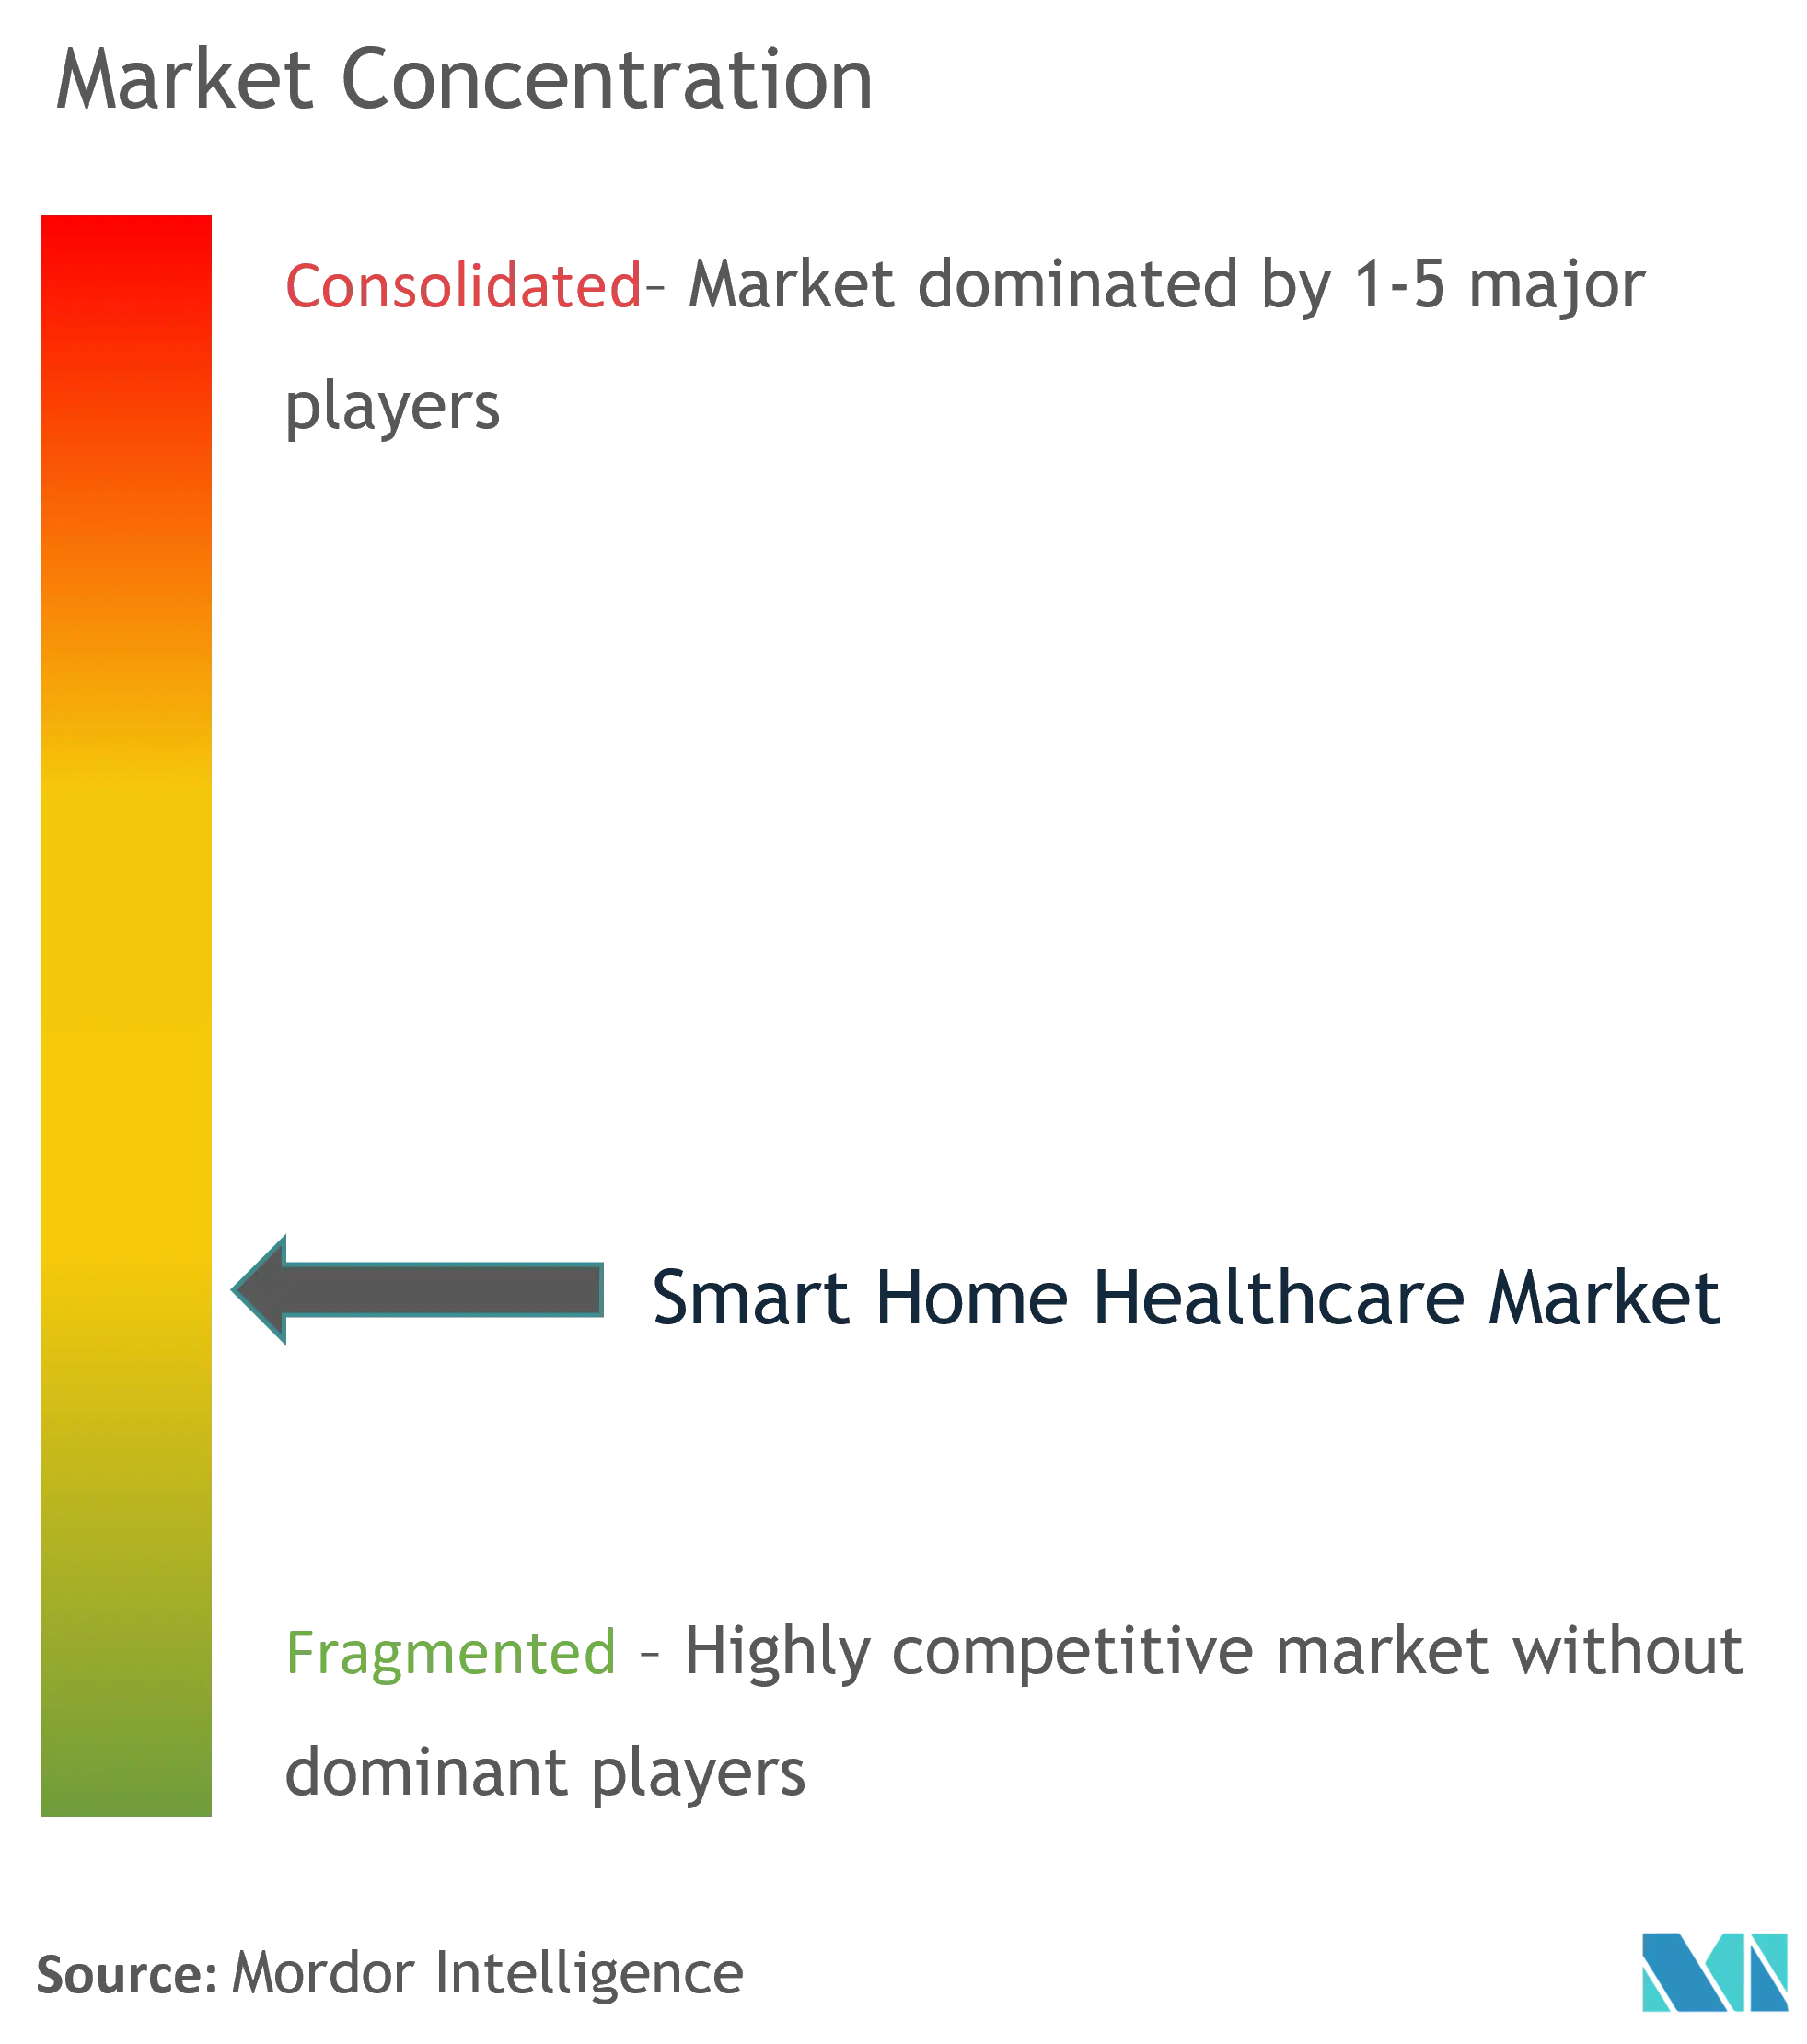 Konzentration des Smart-Home-Healthcare-Marktes